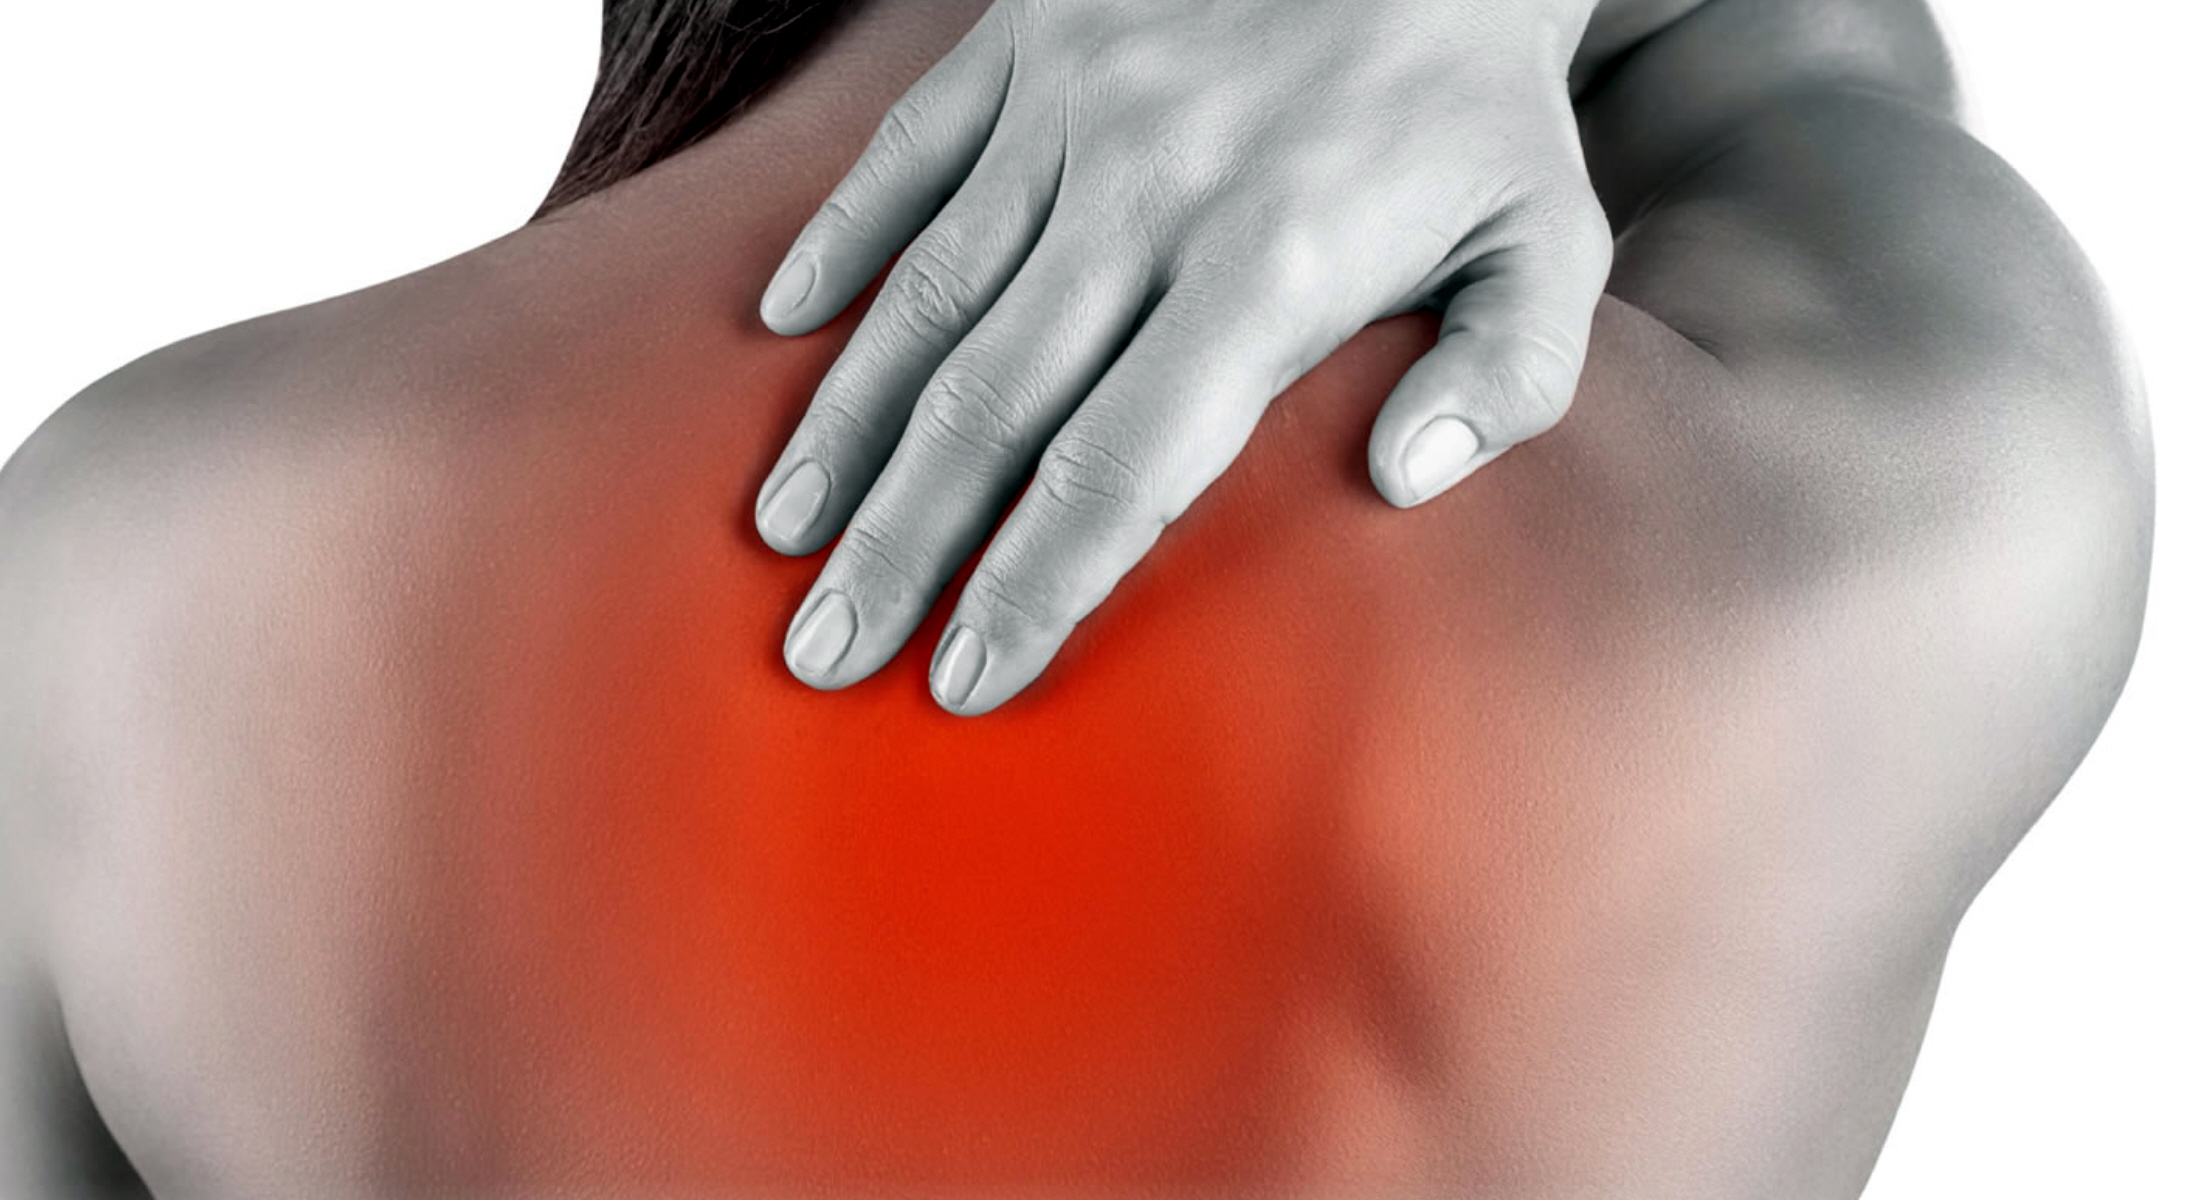 Πόνος στην πλάτη: Περίπου 8 στους 10 ανθρώπους υποφέρουν από αυτό το πρόβλημα – Πως να το αντιμετωπίσετε